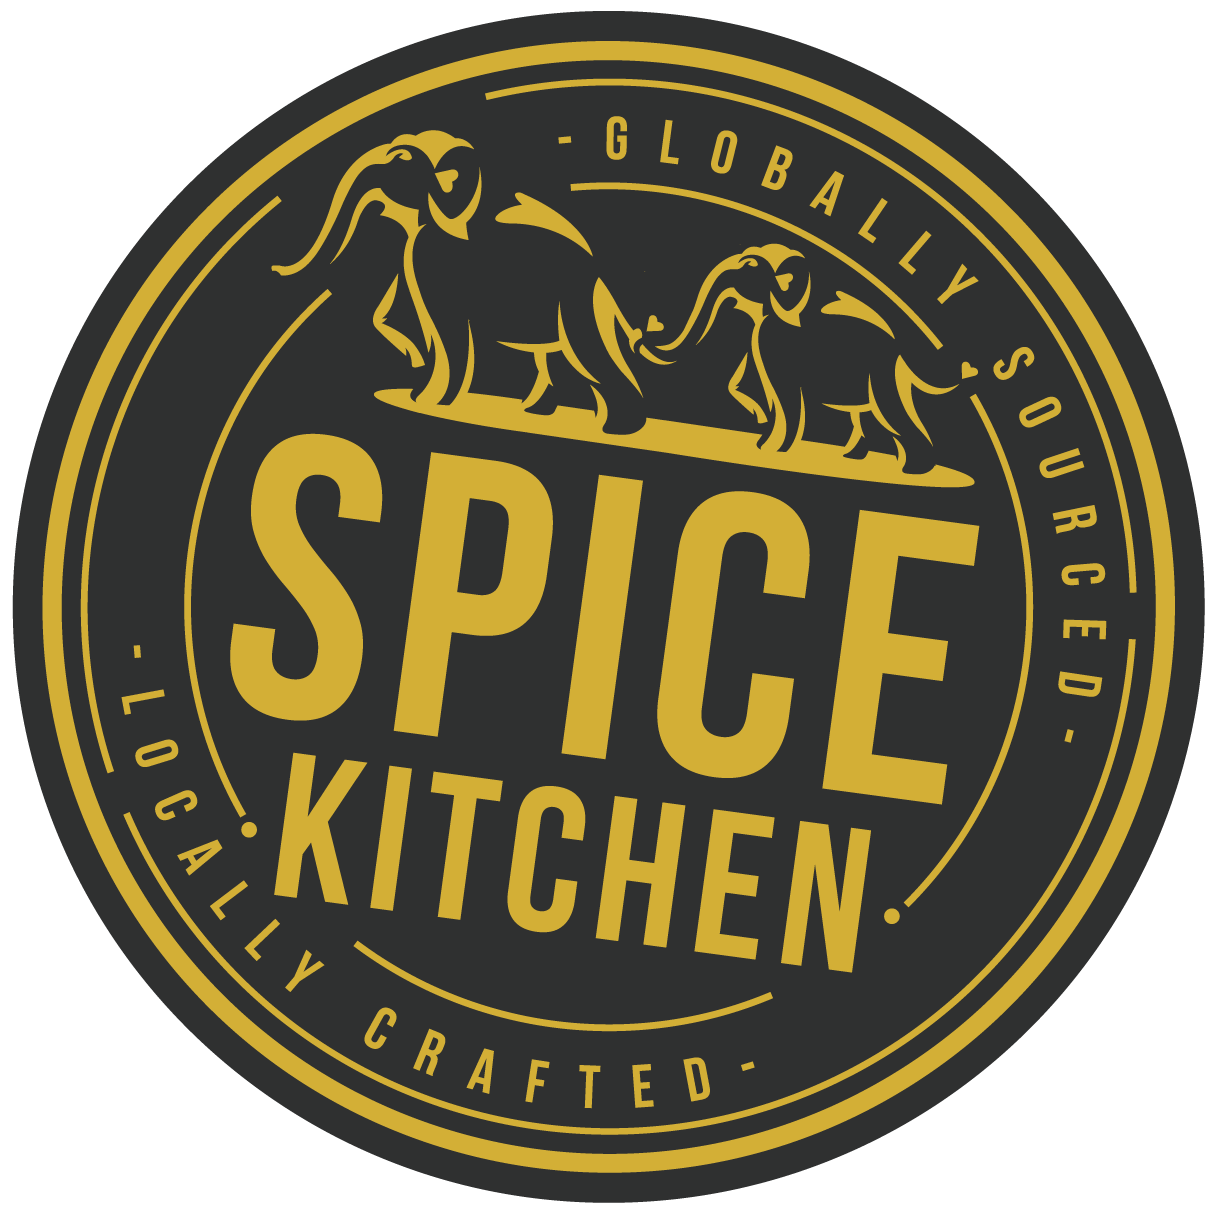 Spice Kitchen Online Ltd